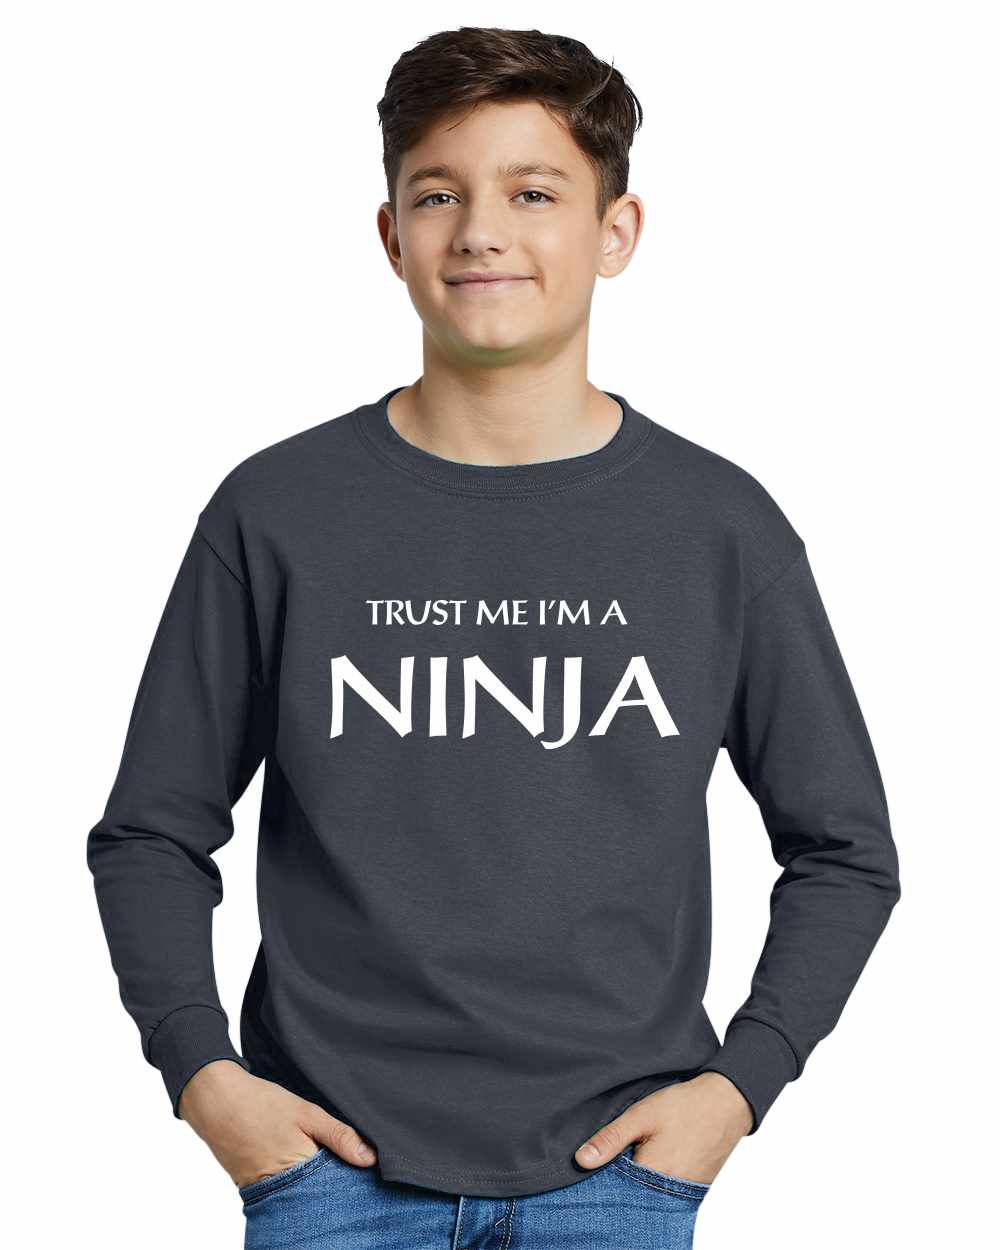 Trust Me I'm a NINJA on Youth Long Sleeve Shirt (#774-203)